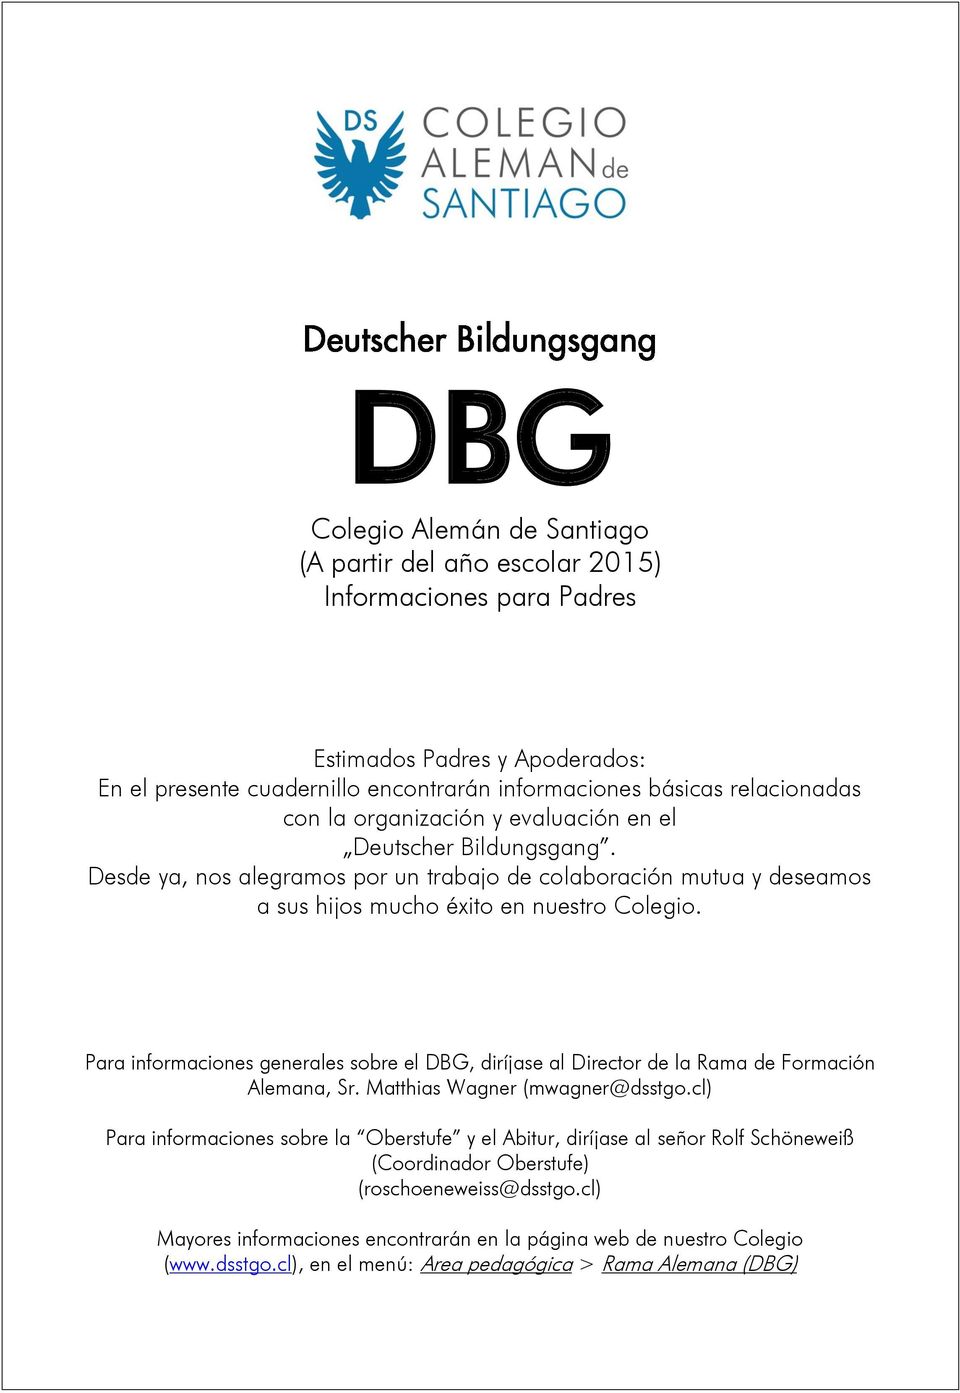 Para informaciones generales sobre el DBG, diríjase al Director de la Rama de Formación Alemana, Sr. Matthias Wagner (mwagner@dsstgo.